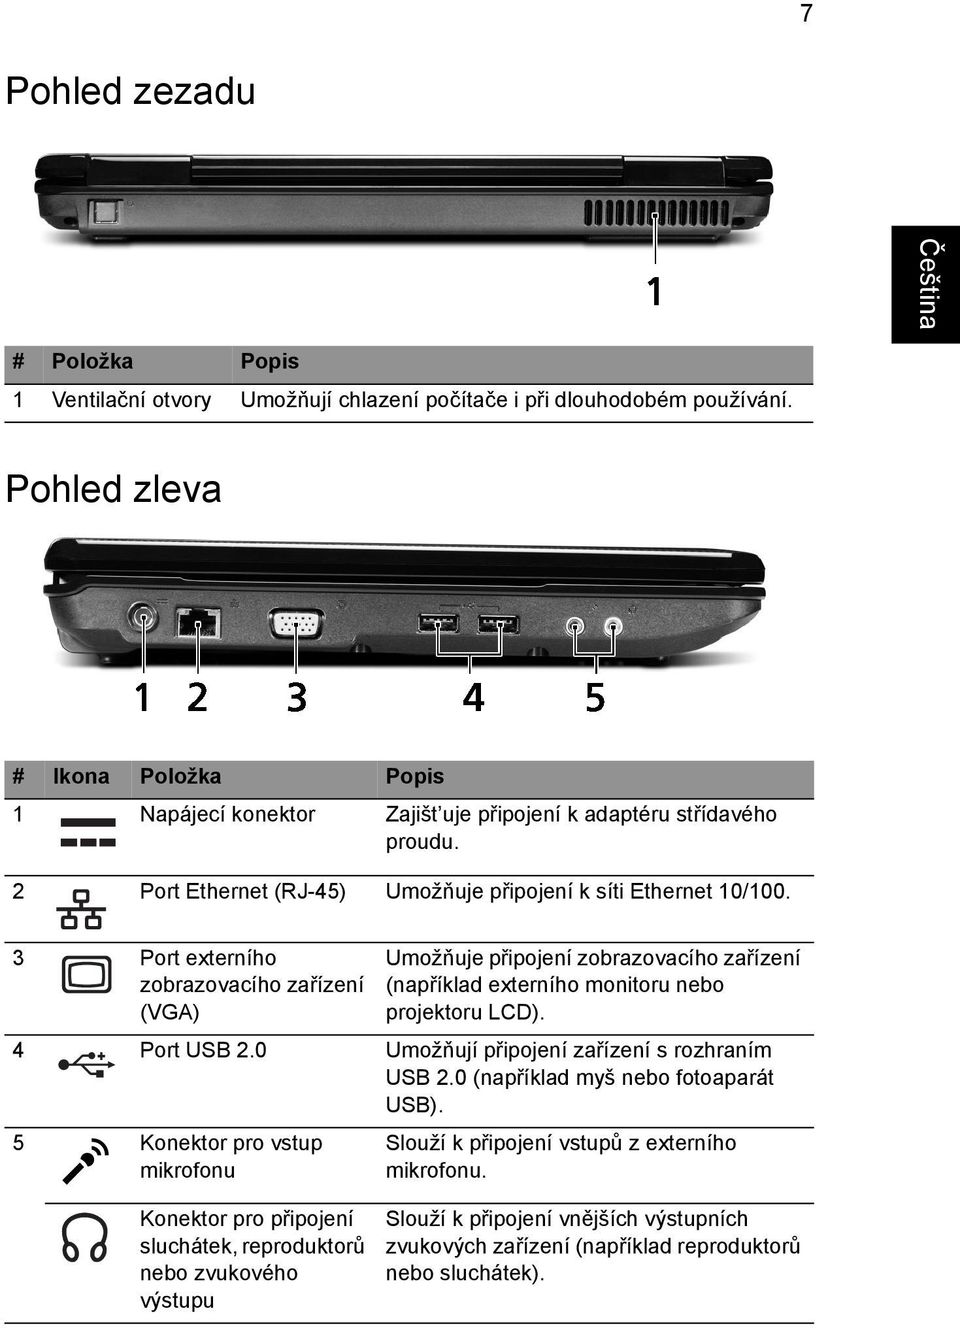 3 Port externího zobrazovacího zařízení (VGA) Umožňuje připojení zobrazovacího zařízení (například externího monitoru nebo projektoru LCD). 4 Port USB 2.